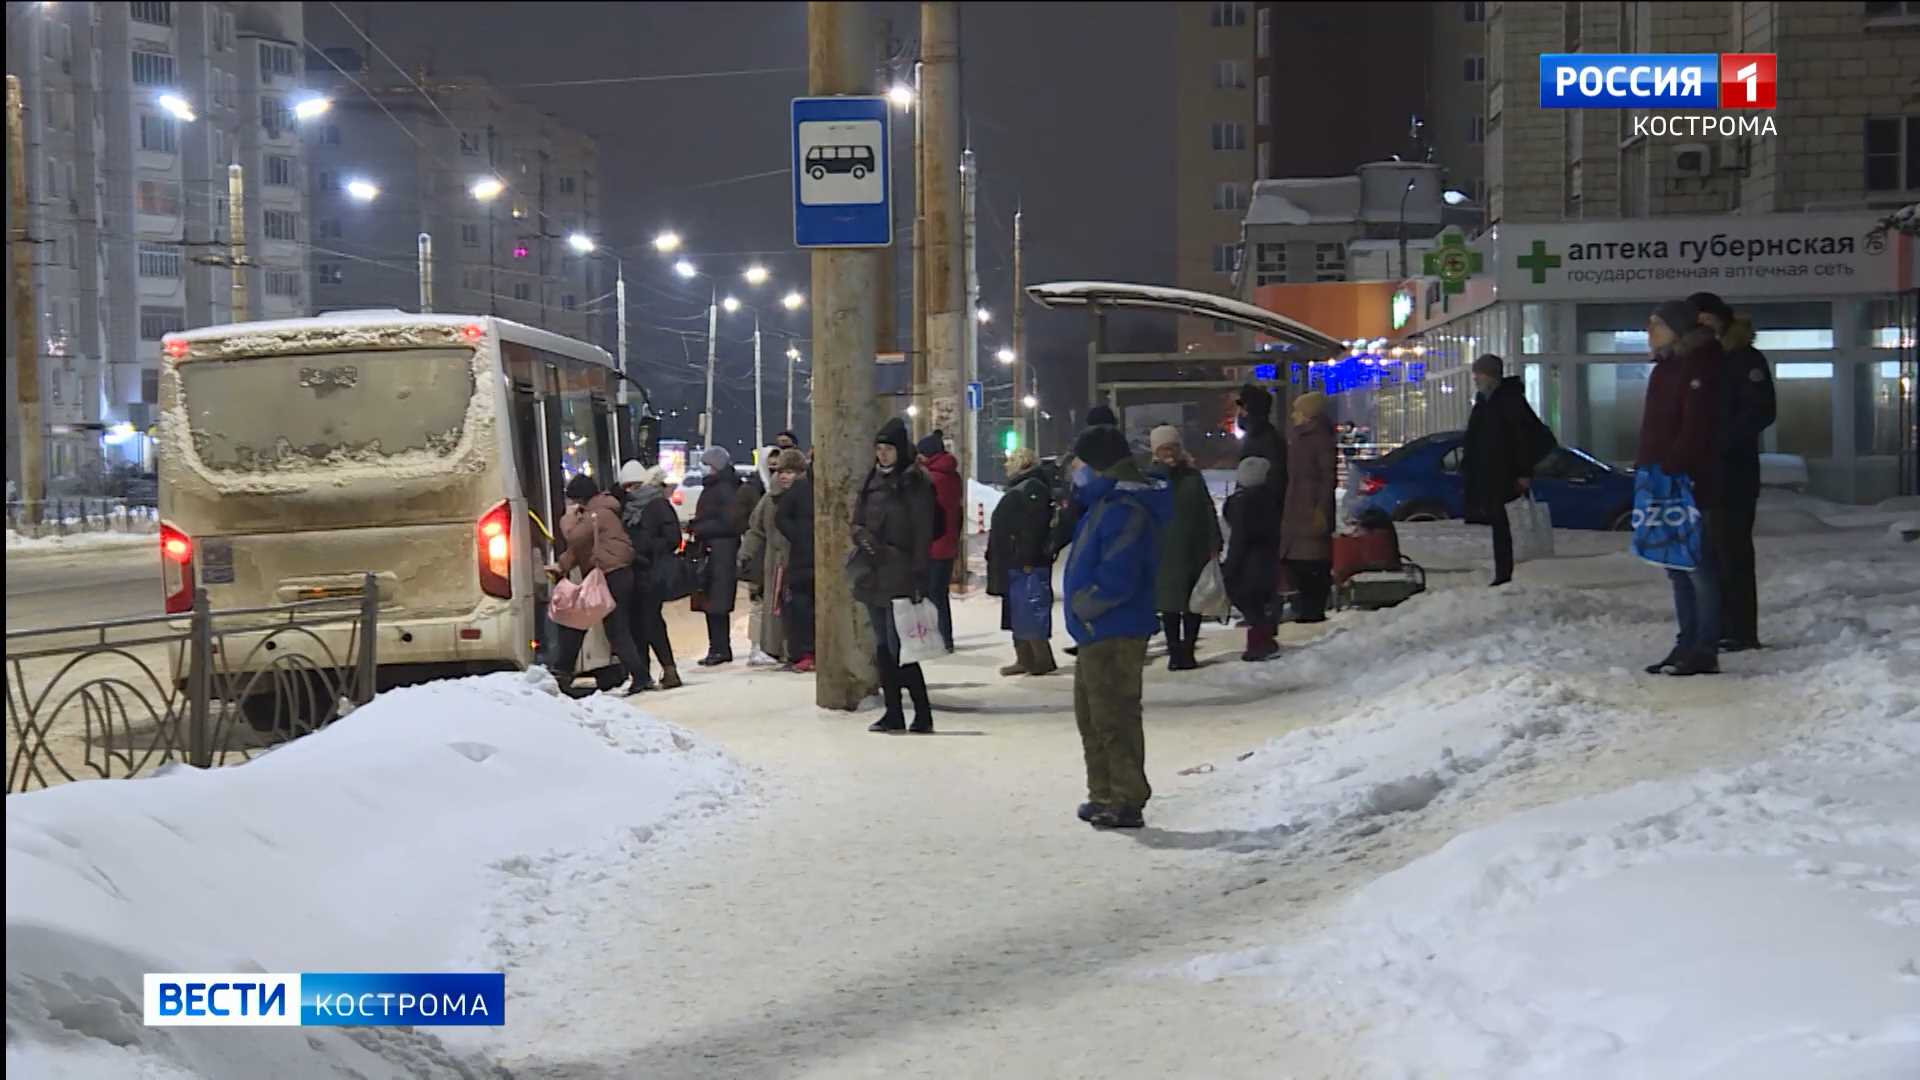 Цены выше, проблемы – те же: пассажиры критикуют работу костромских автобусов